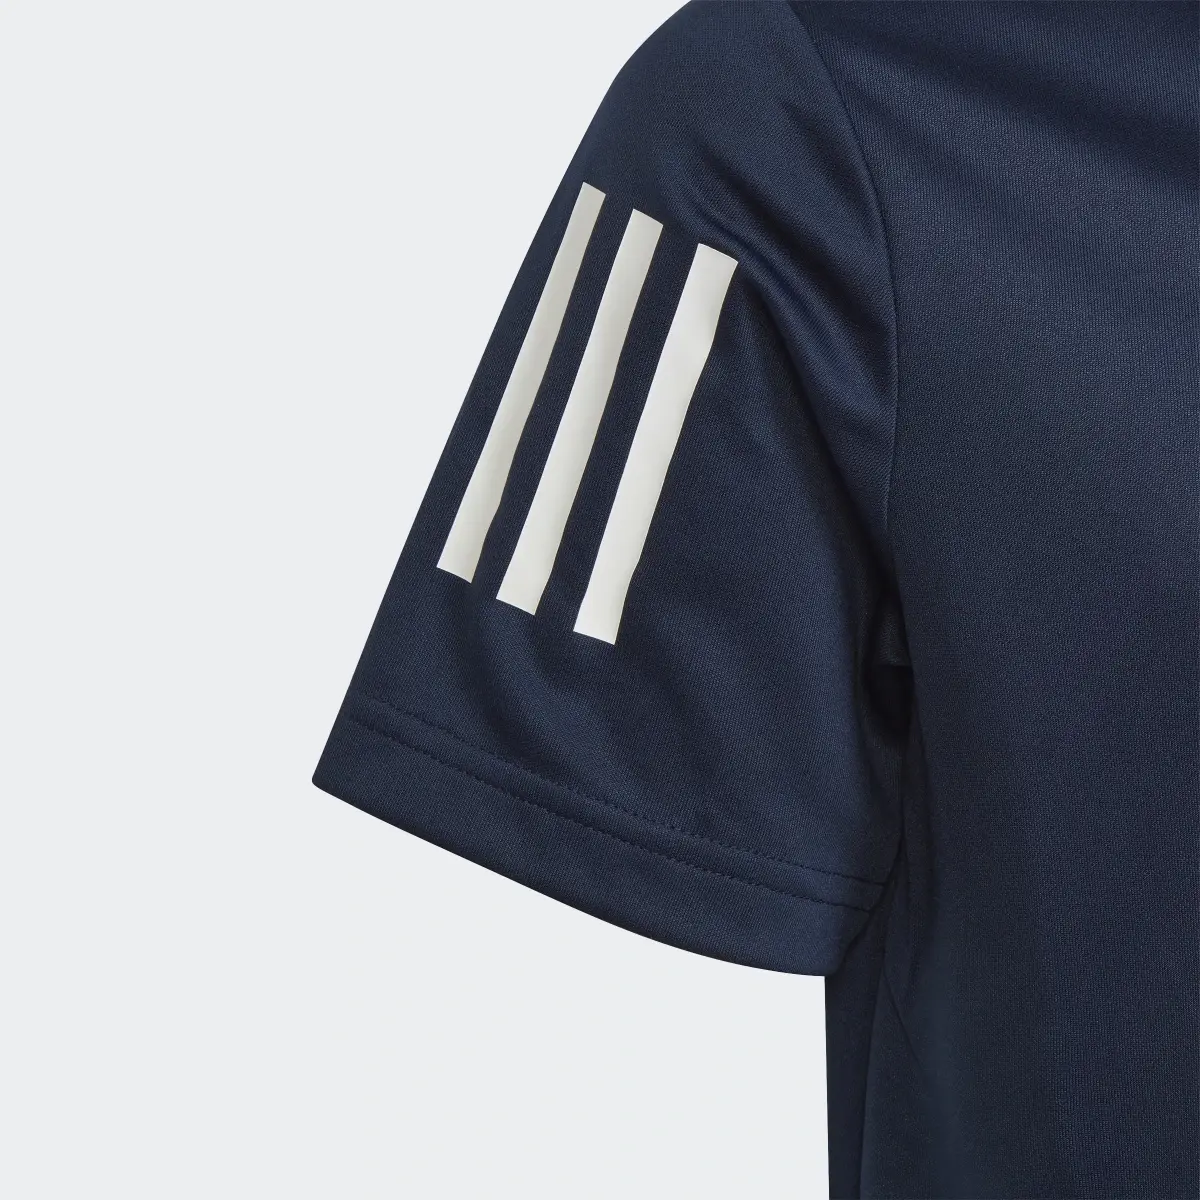 Adidas 3-Streifen Poloshirt. 3